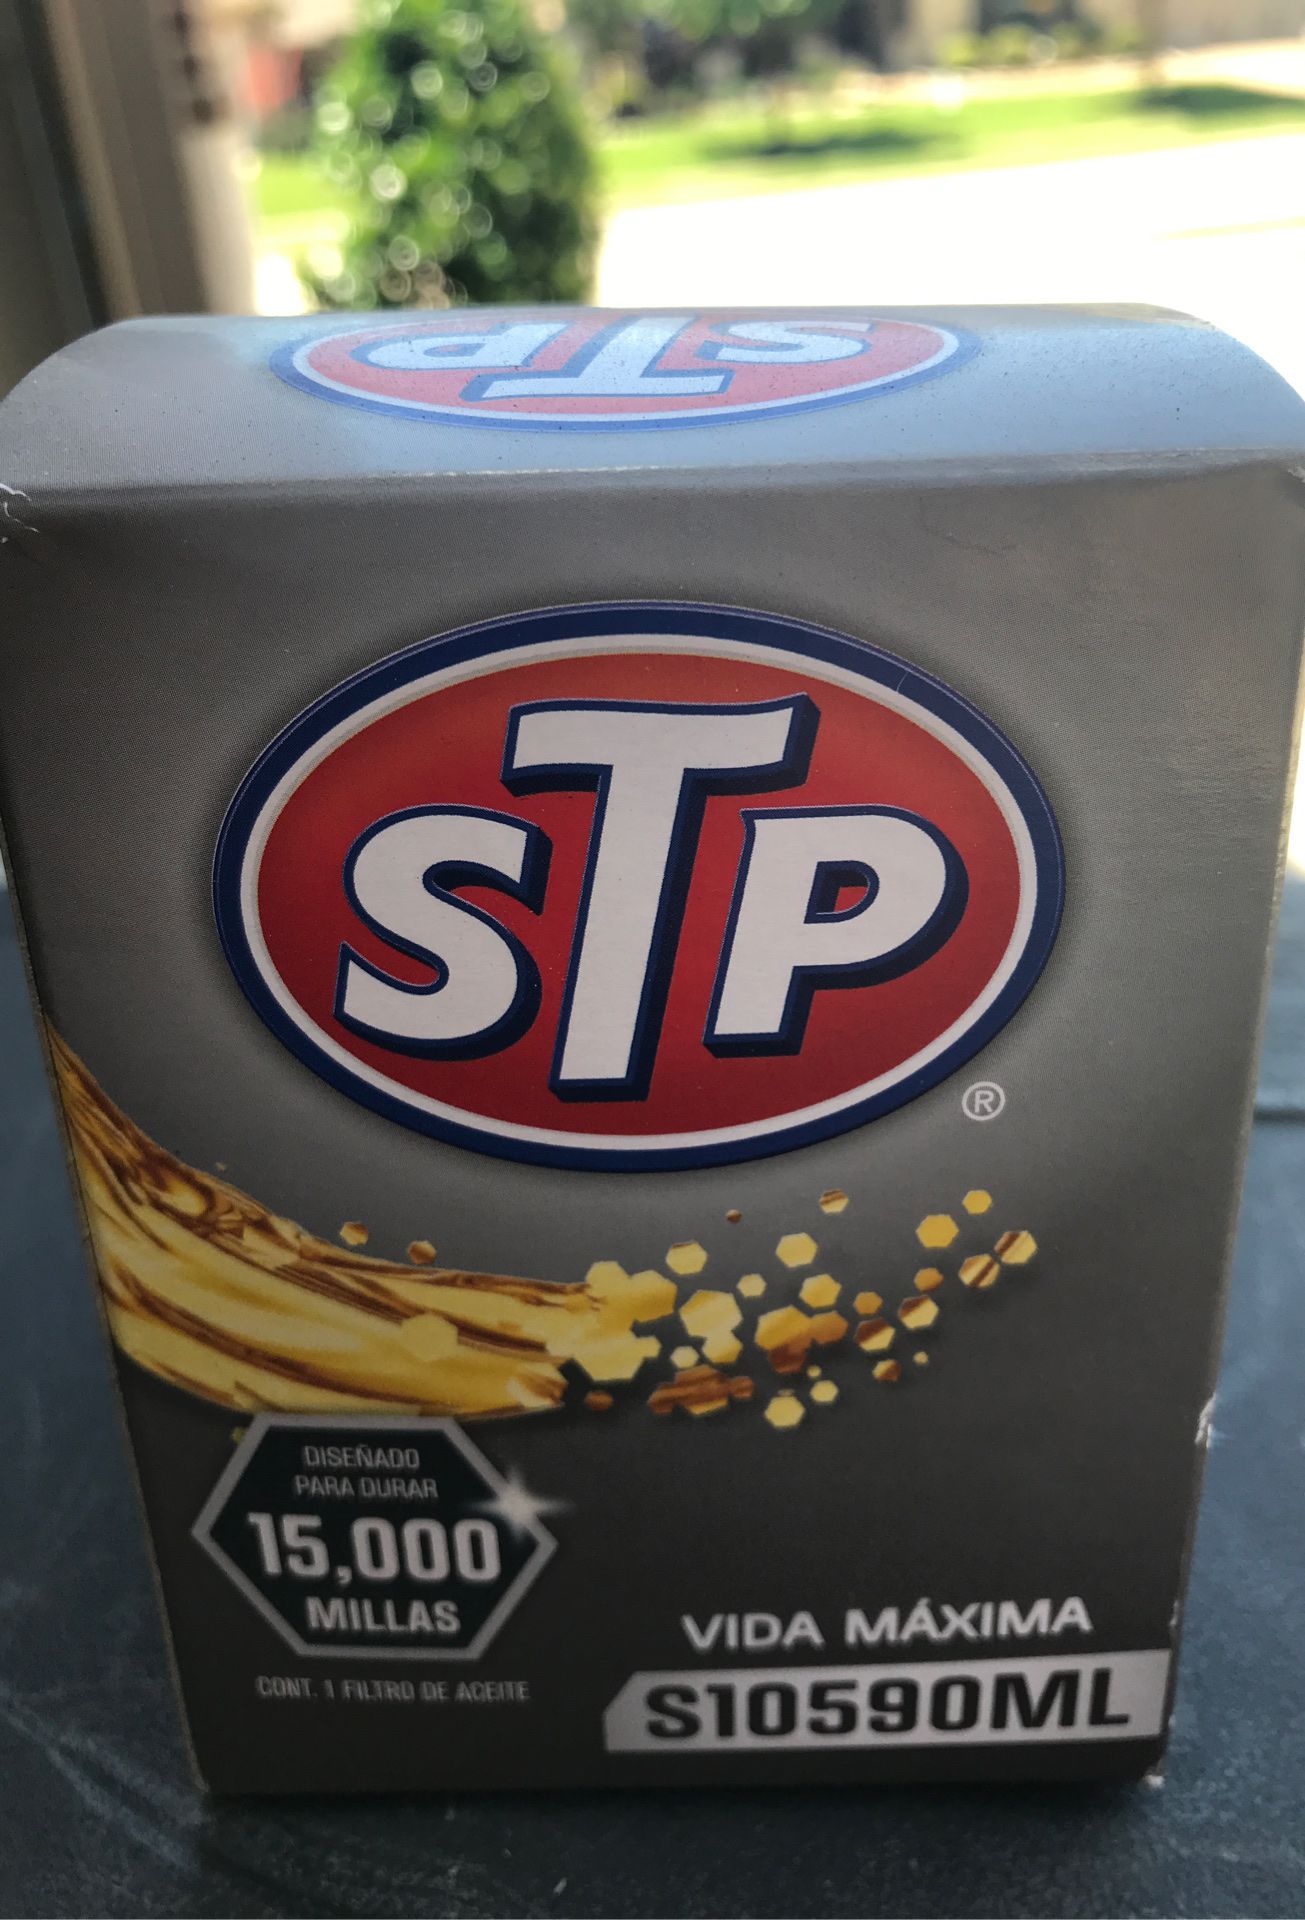 STP oil filter S10590ML